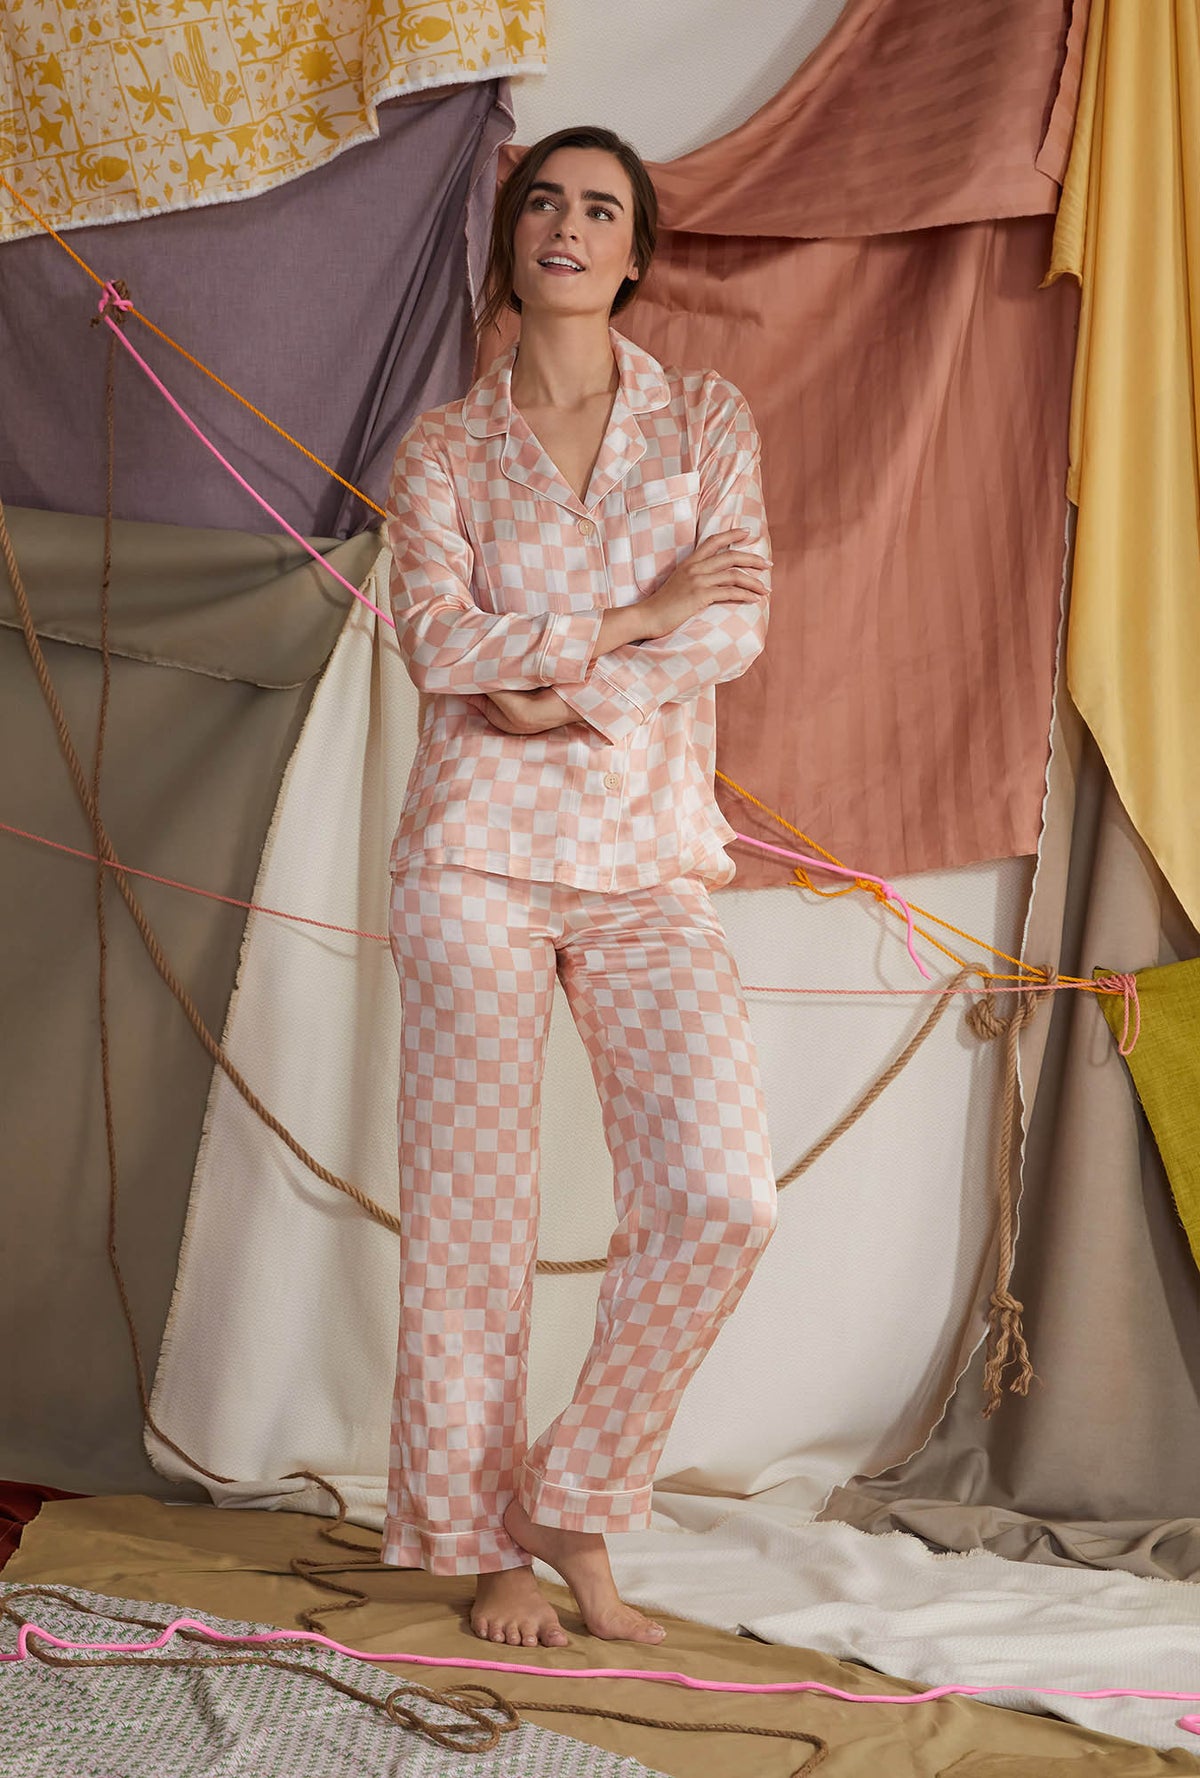 Bedhead Pajamas Women's Print Silk Pajamas